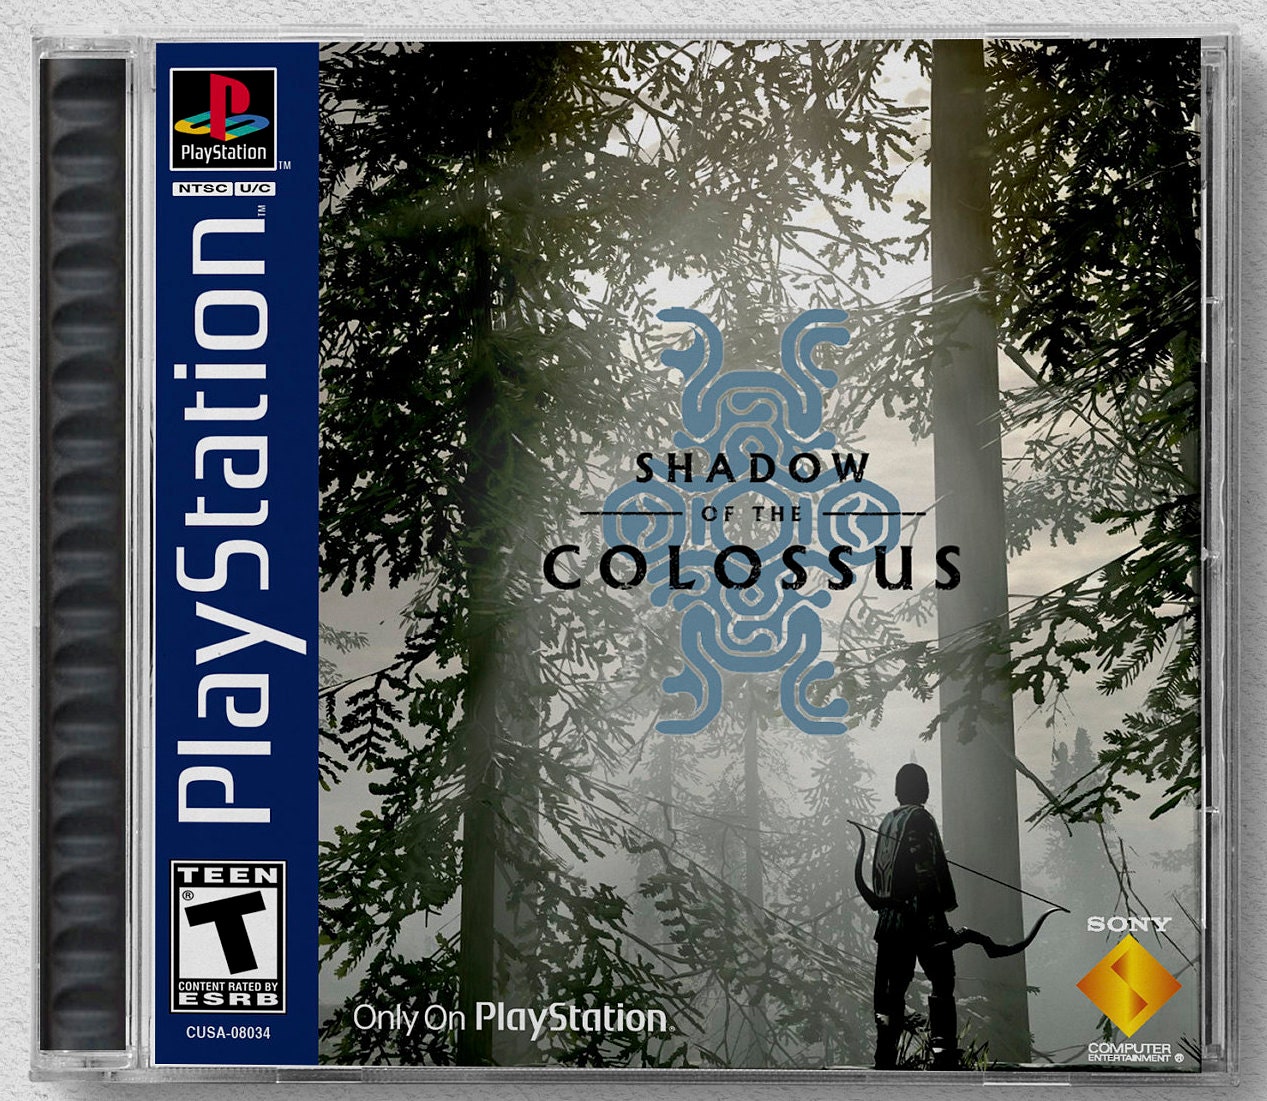 Shadow of the Colossus (PS4) preço mais barato: 7,83€